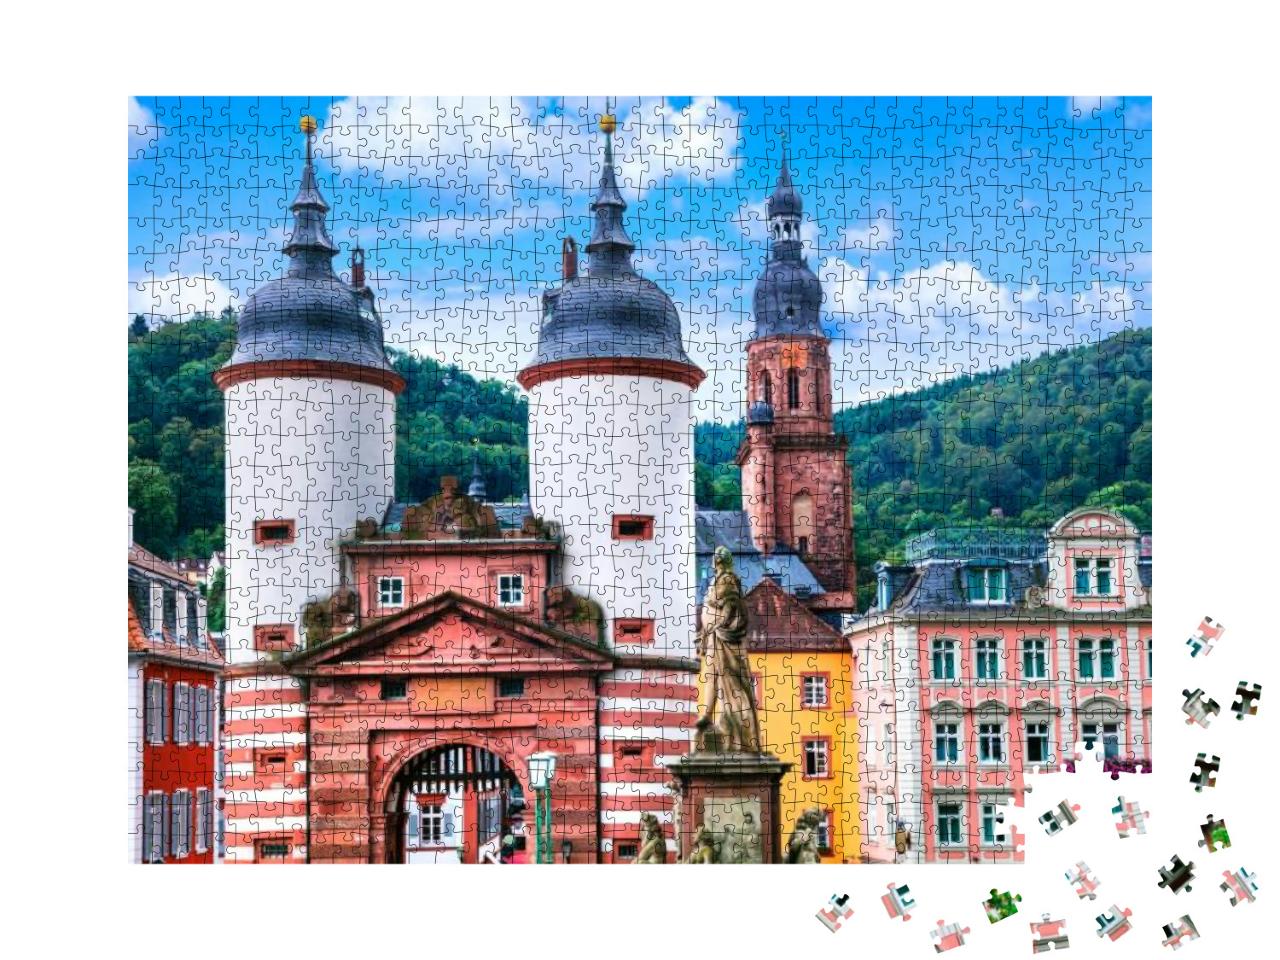 Puzzle 1000 Teile „Das mittelalterliche Heidelberg, Deutschland“